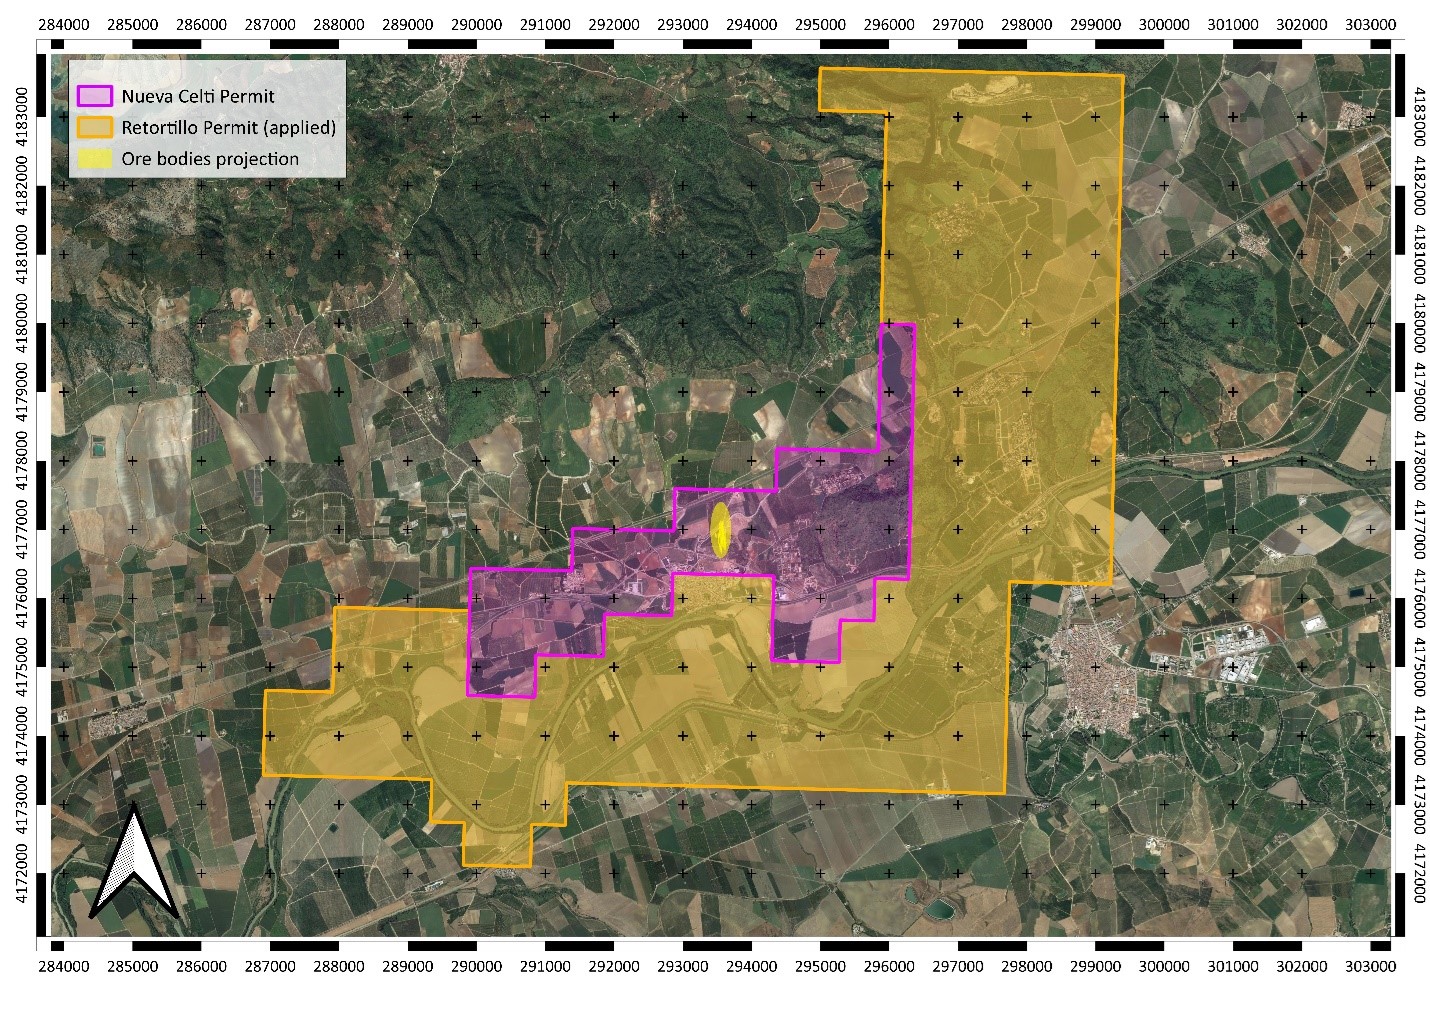 Location of the area under investigation on respect to the Nueva Celti and Retortillo (applied) Investigation Permits.